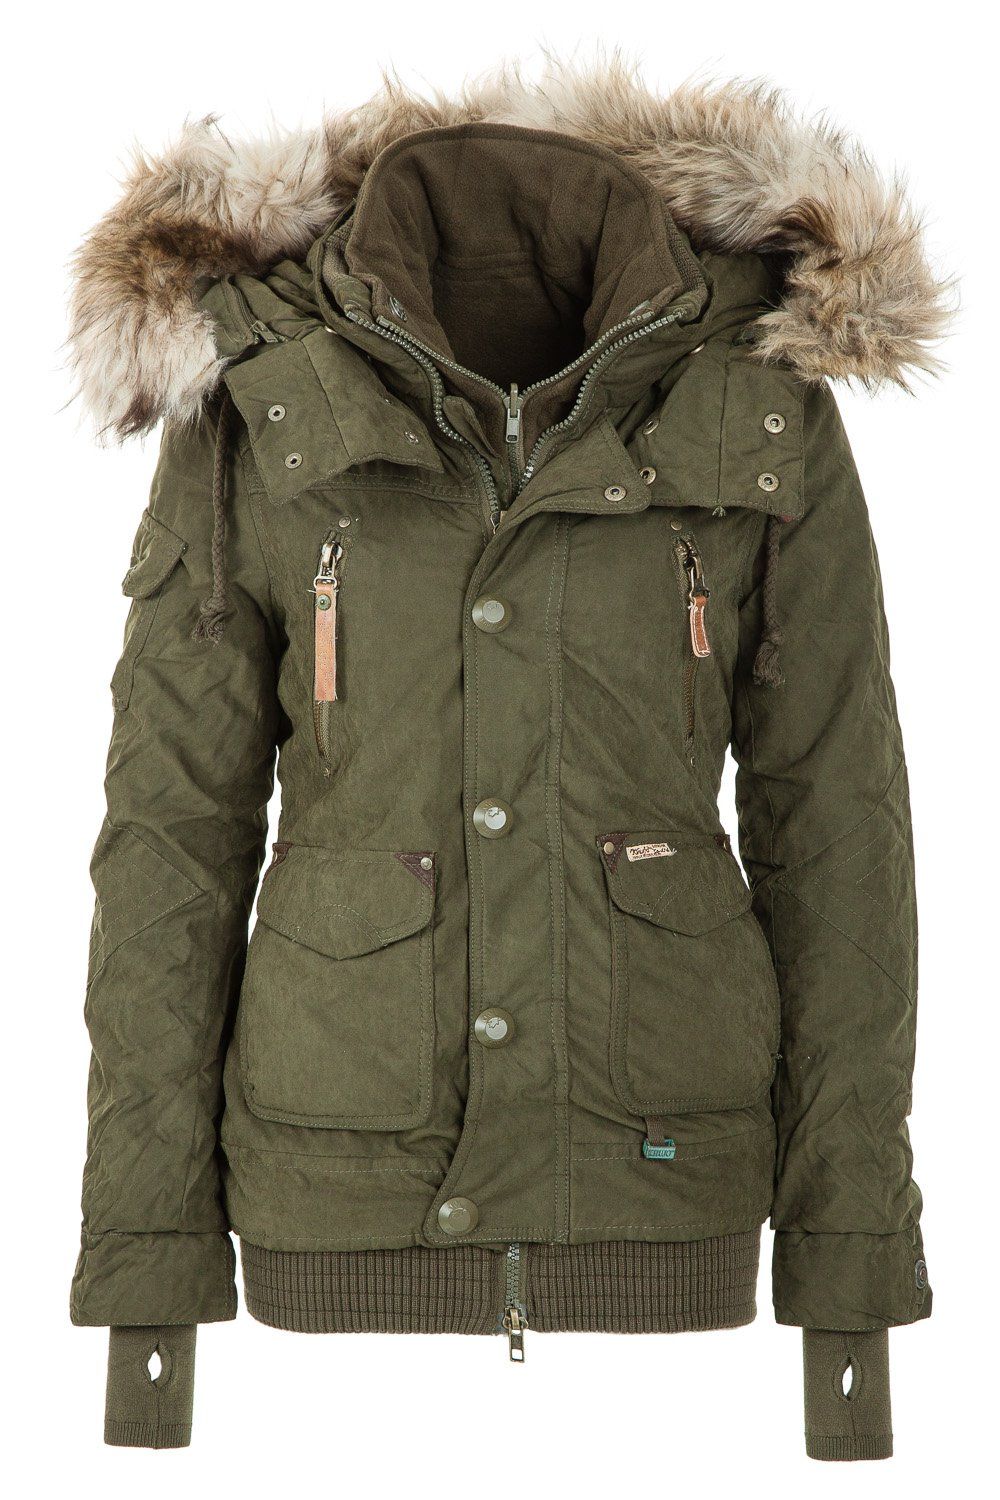 Khujo Women\'s Winter Jacket Margret Olive 320 http://www.